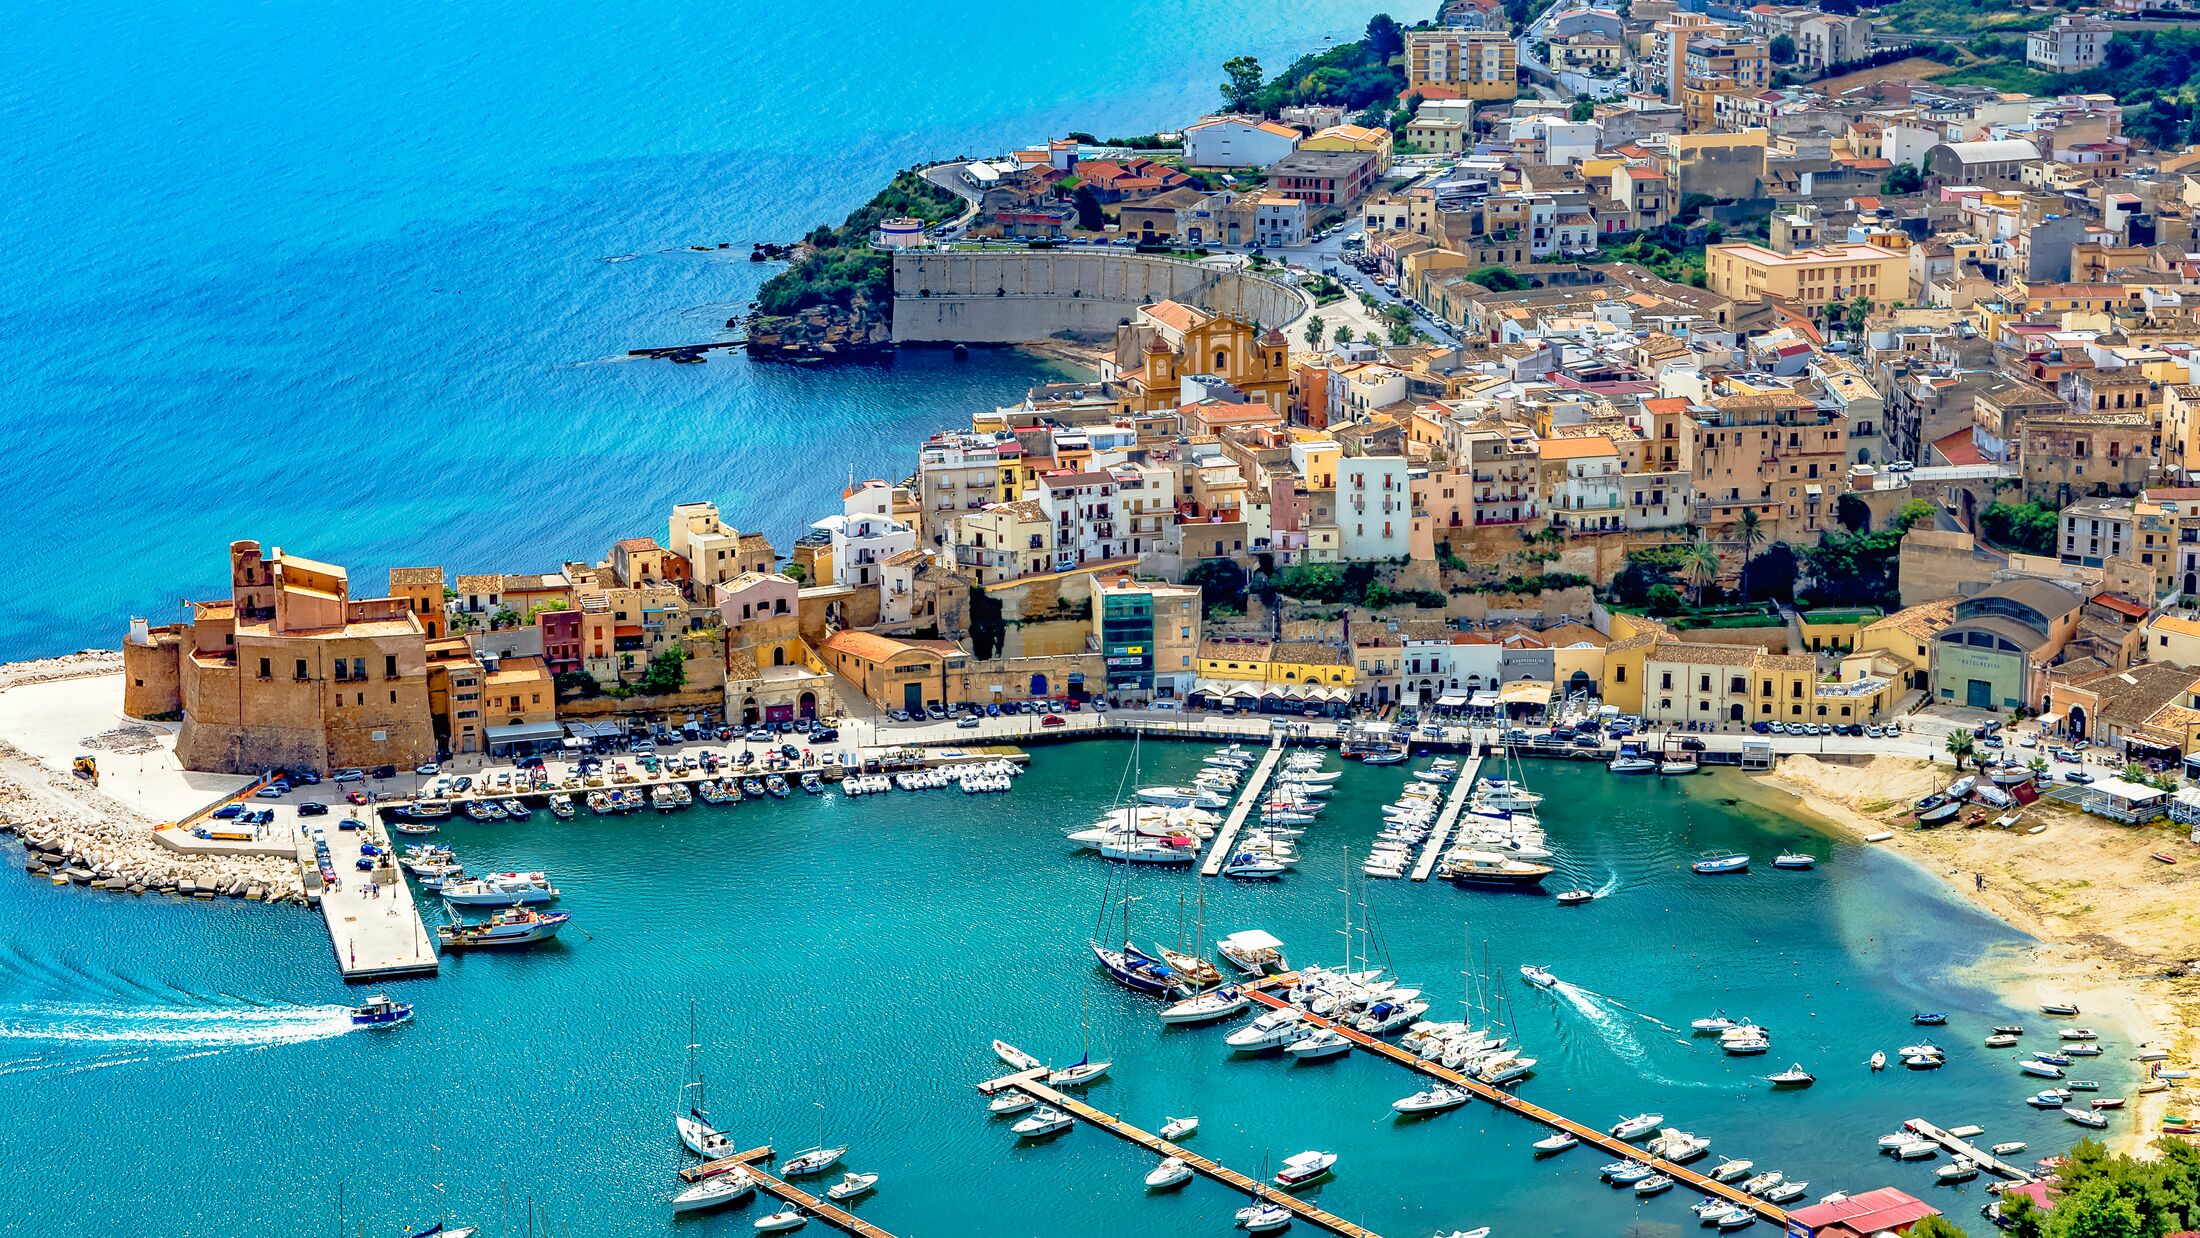 The port city of Castellammare del Golfo near Palermo in Sicily